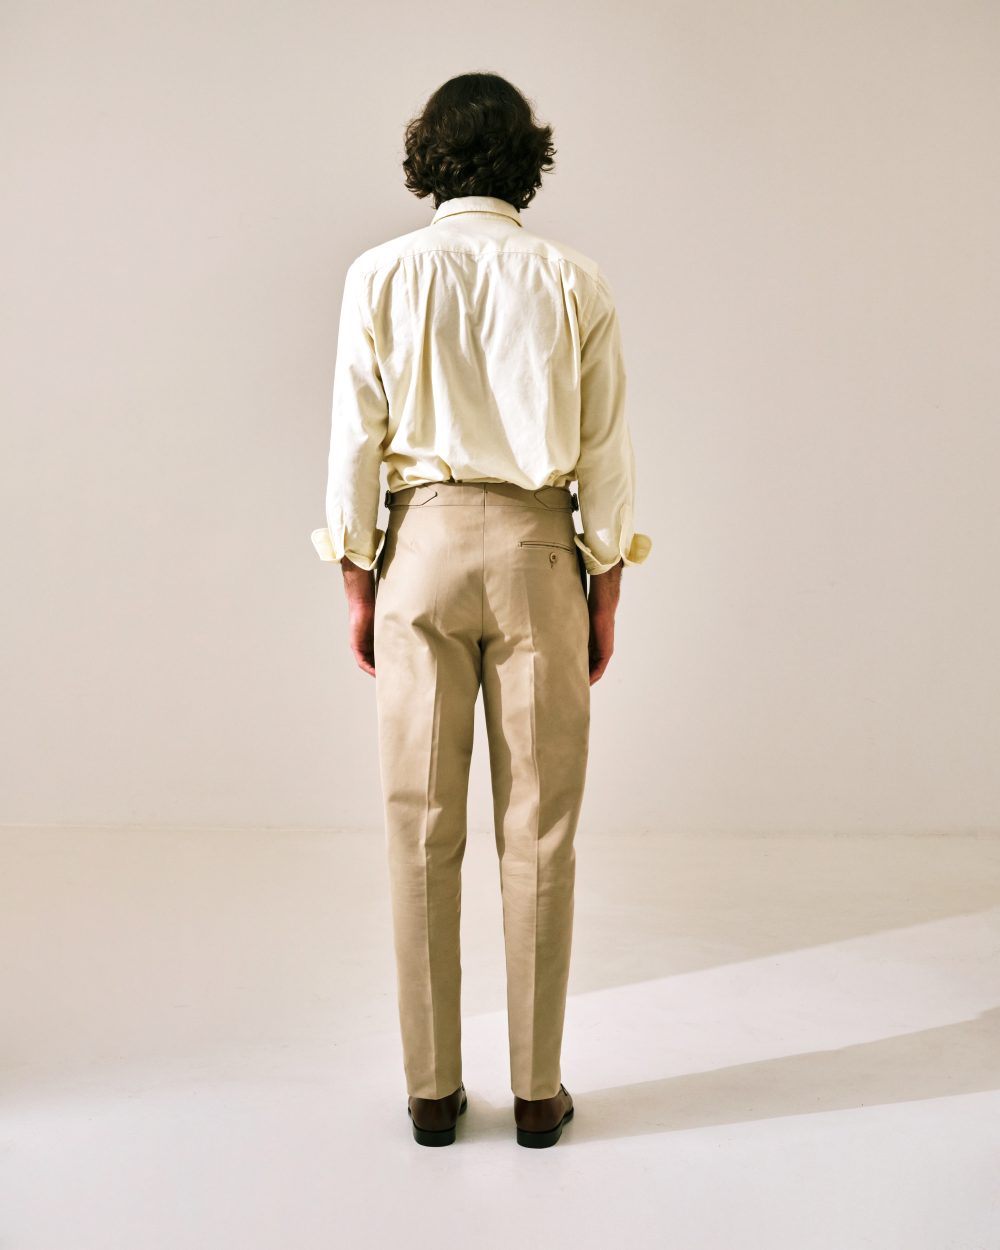 Pantalon Coupe Une Pince S3 / Coton Chino